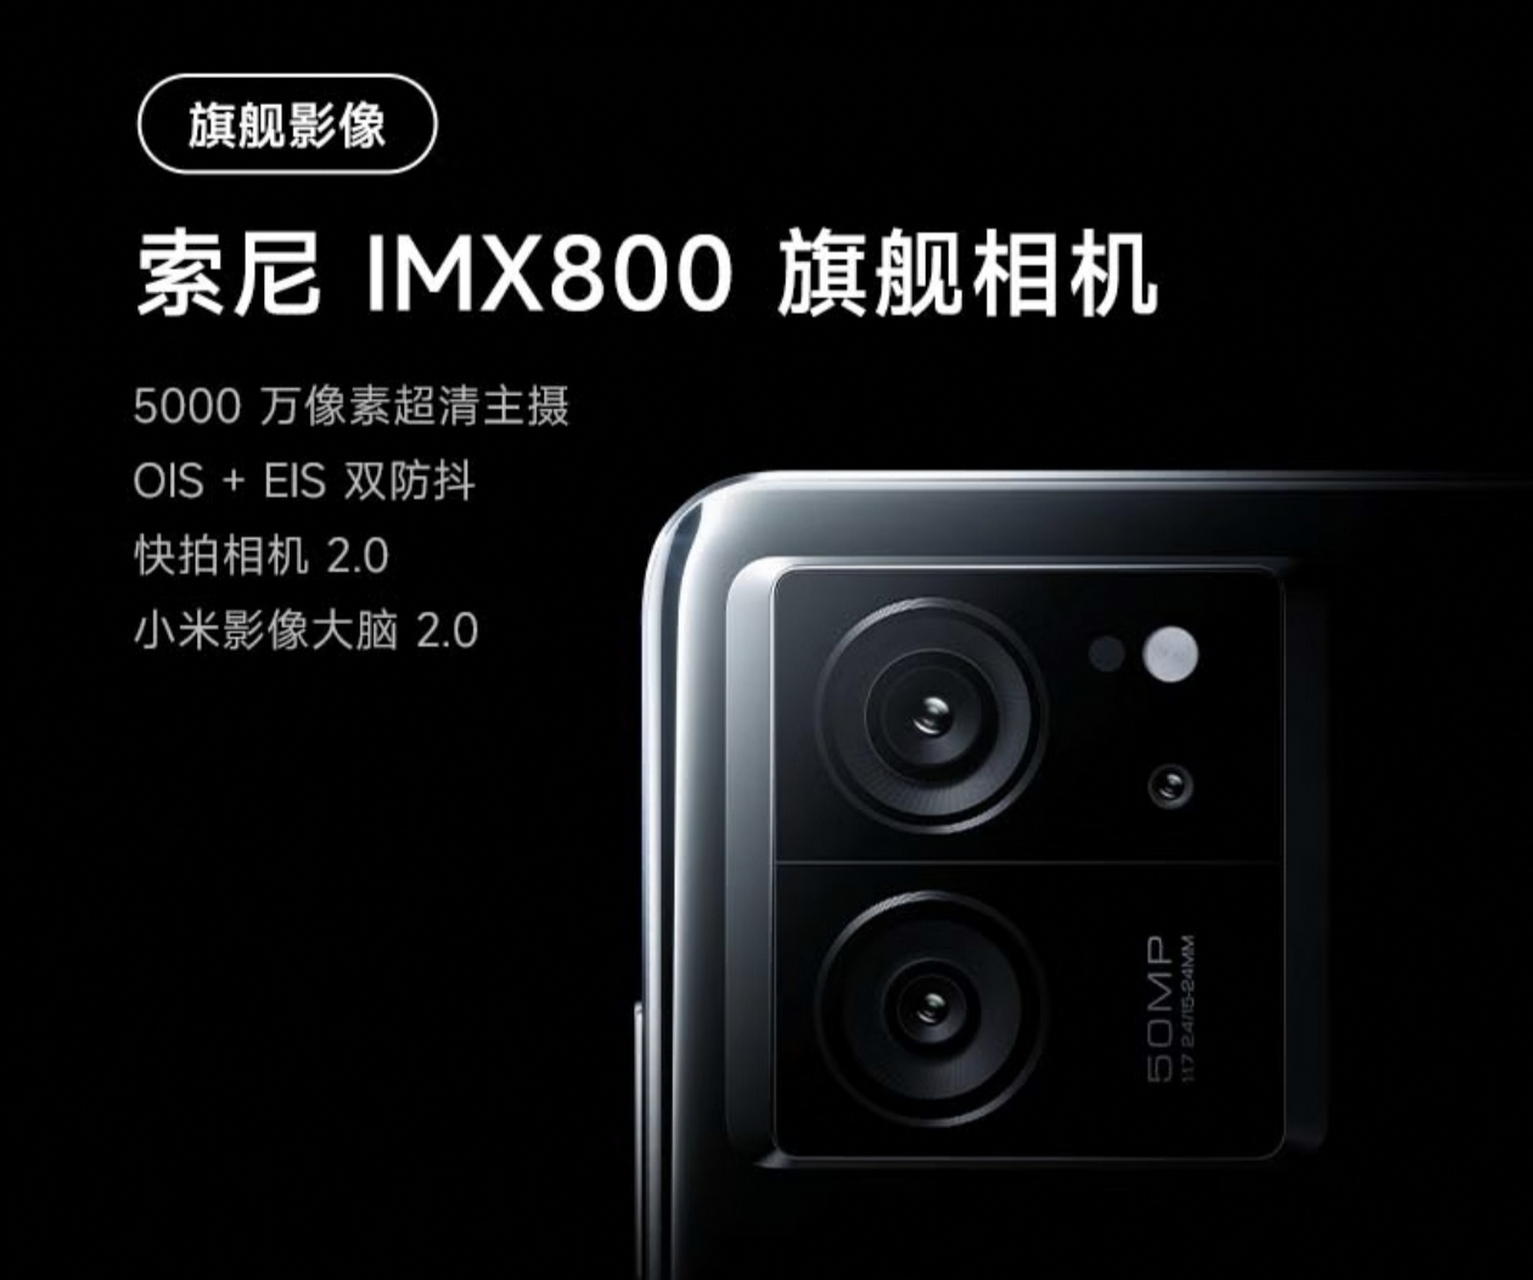 在摄像头方面,redmi k60至尊版配备了索尼imx800传感器,拥有5000万